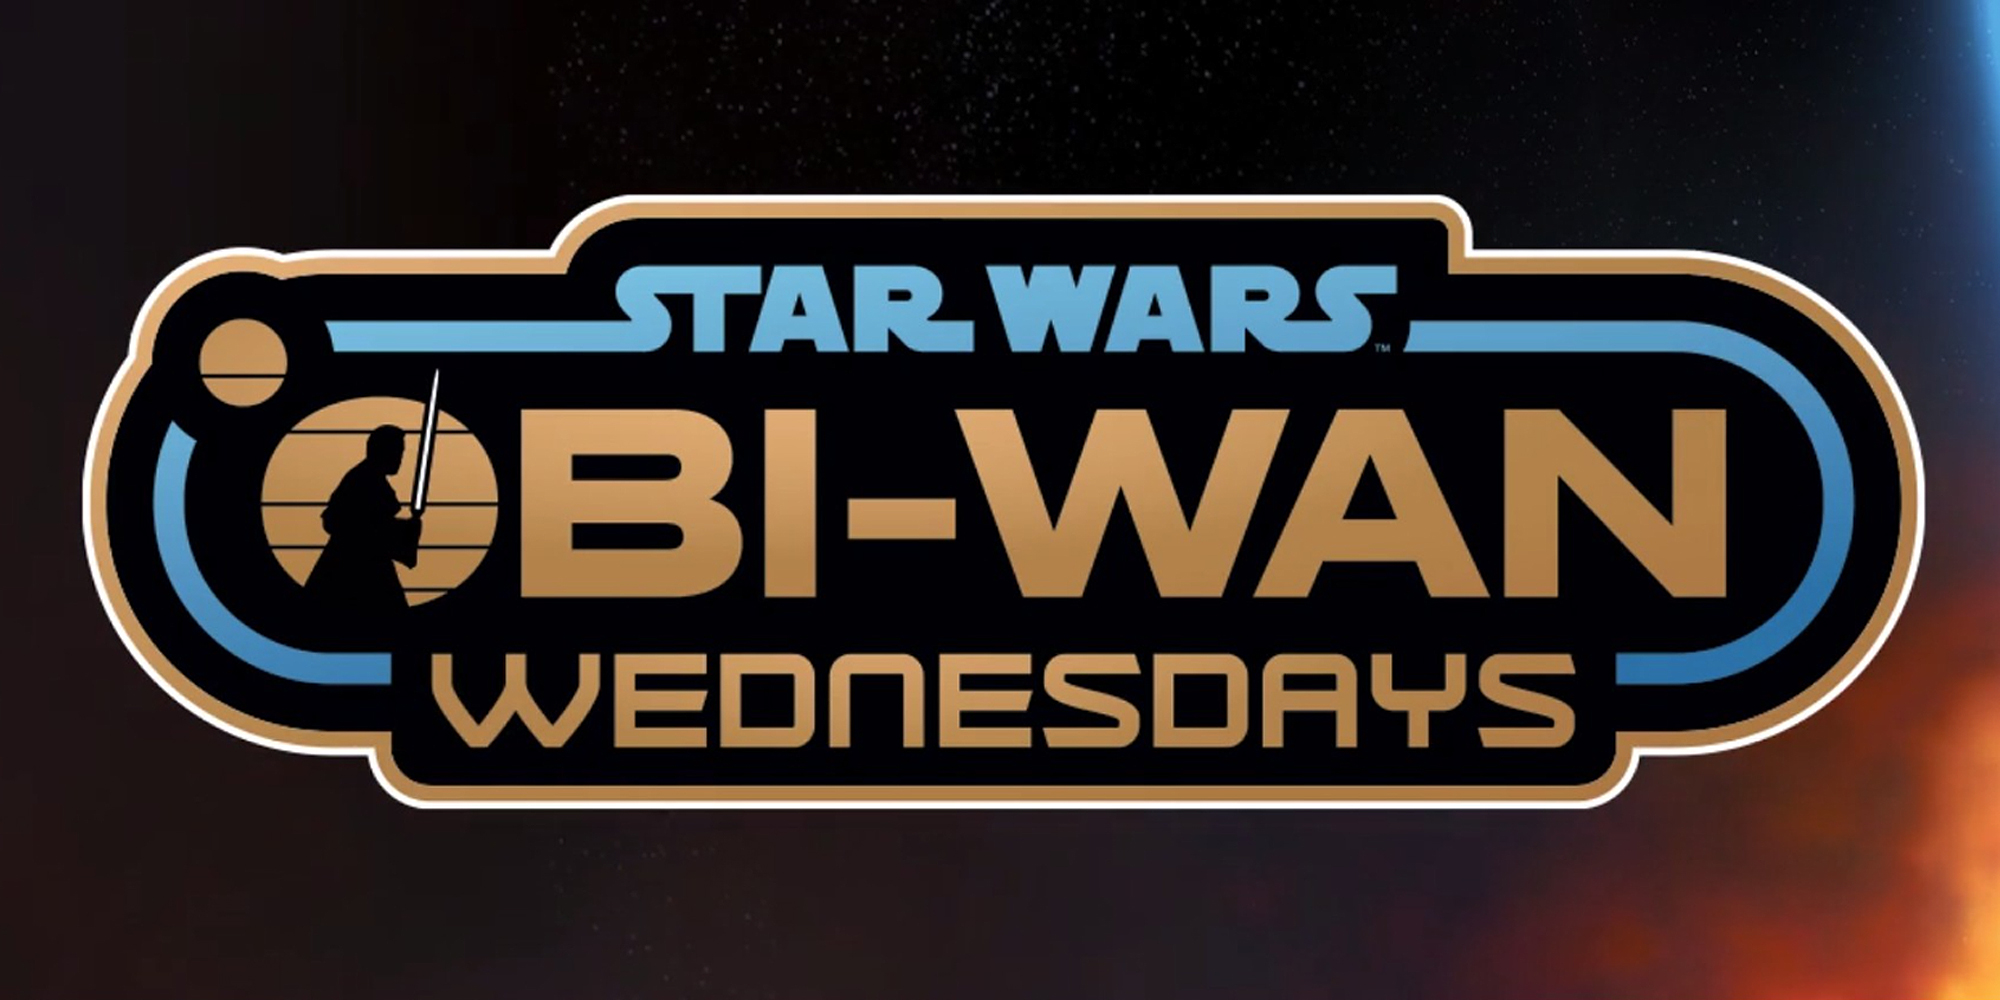 Obi-Wan Wednesdays